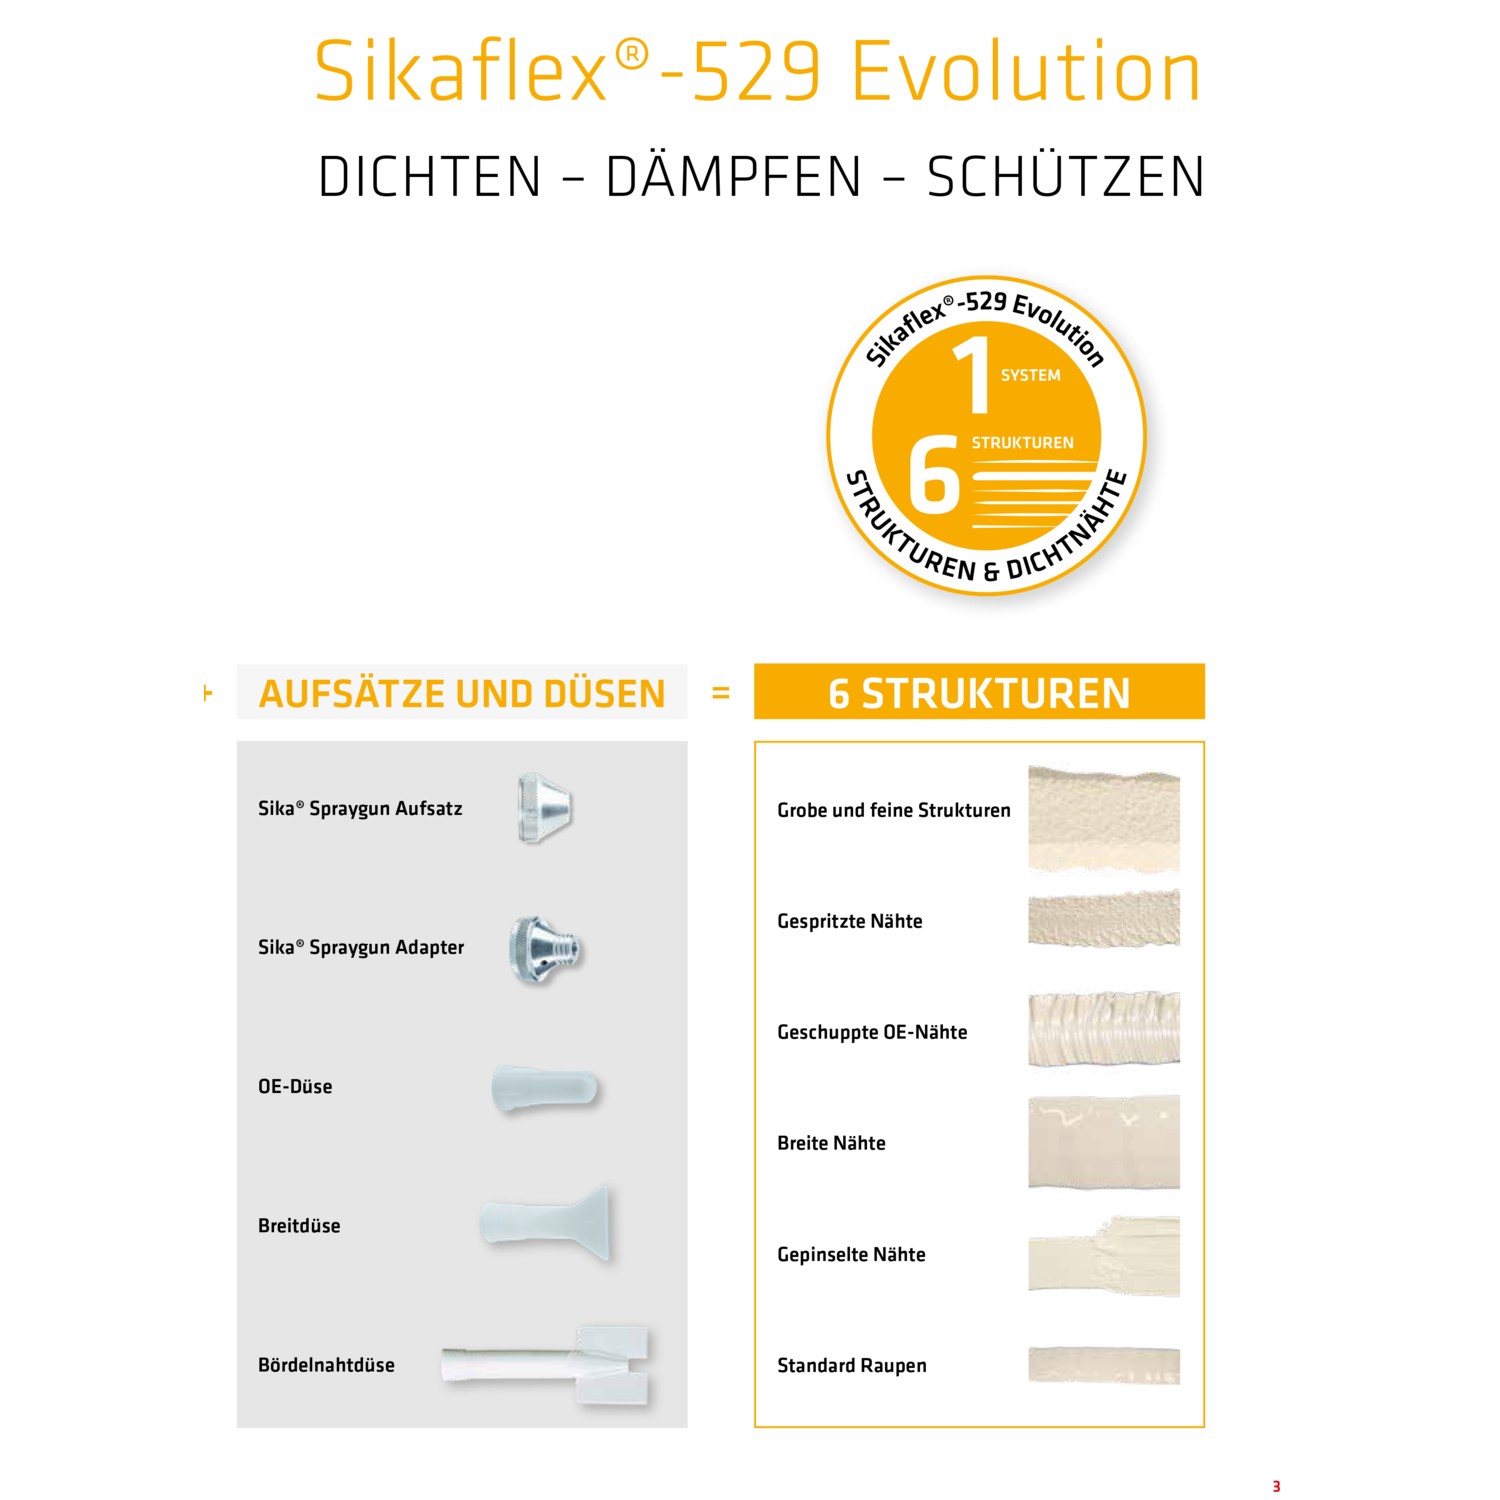 Sikaflex-529 Evolution schwarz Kartusche